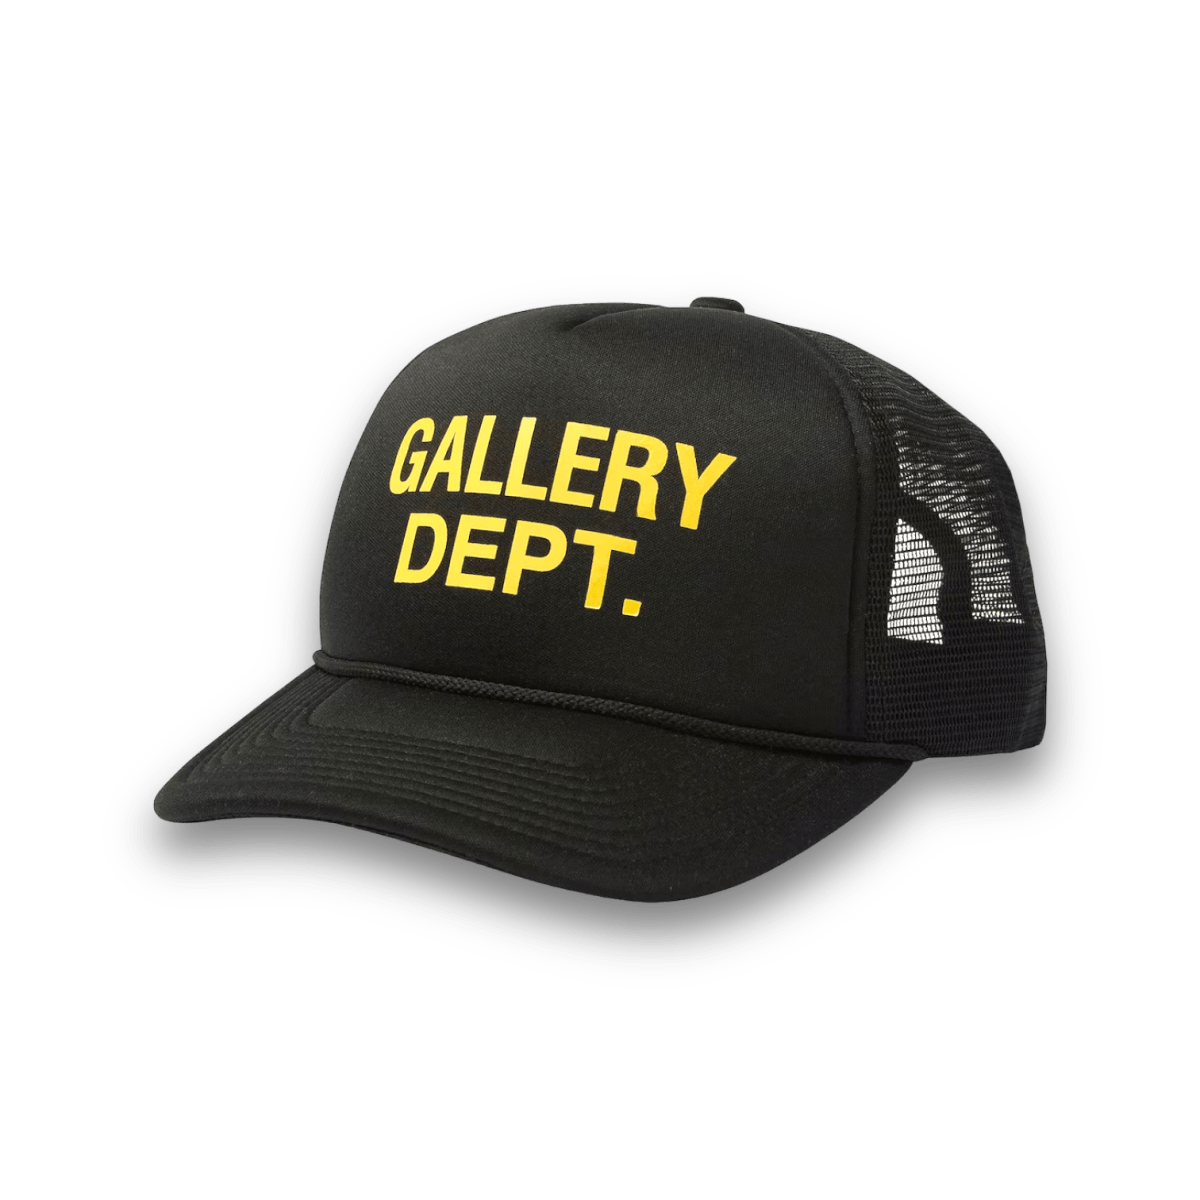 Gallery Dept. Logo Trucker Hat - Black - Headwear - Jawns on Fire Sneakers & Streetwear